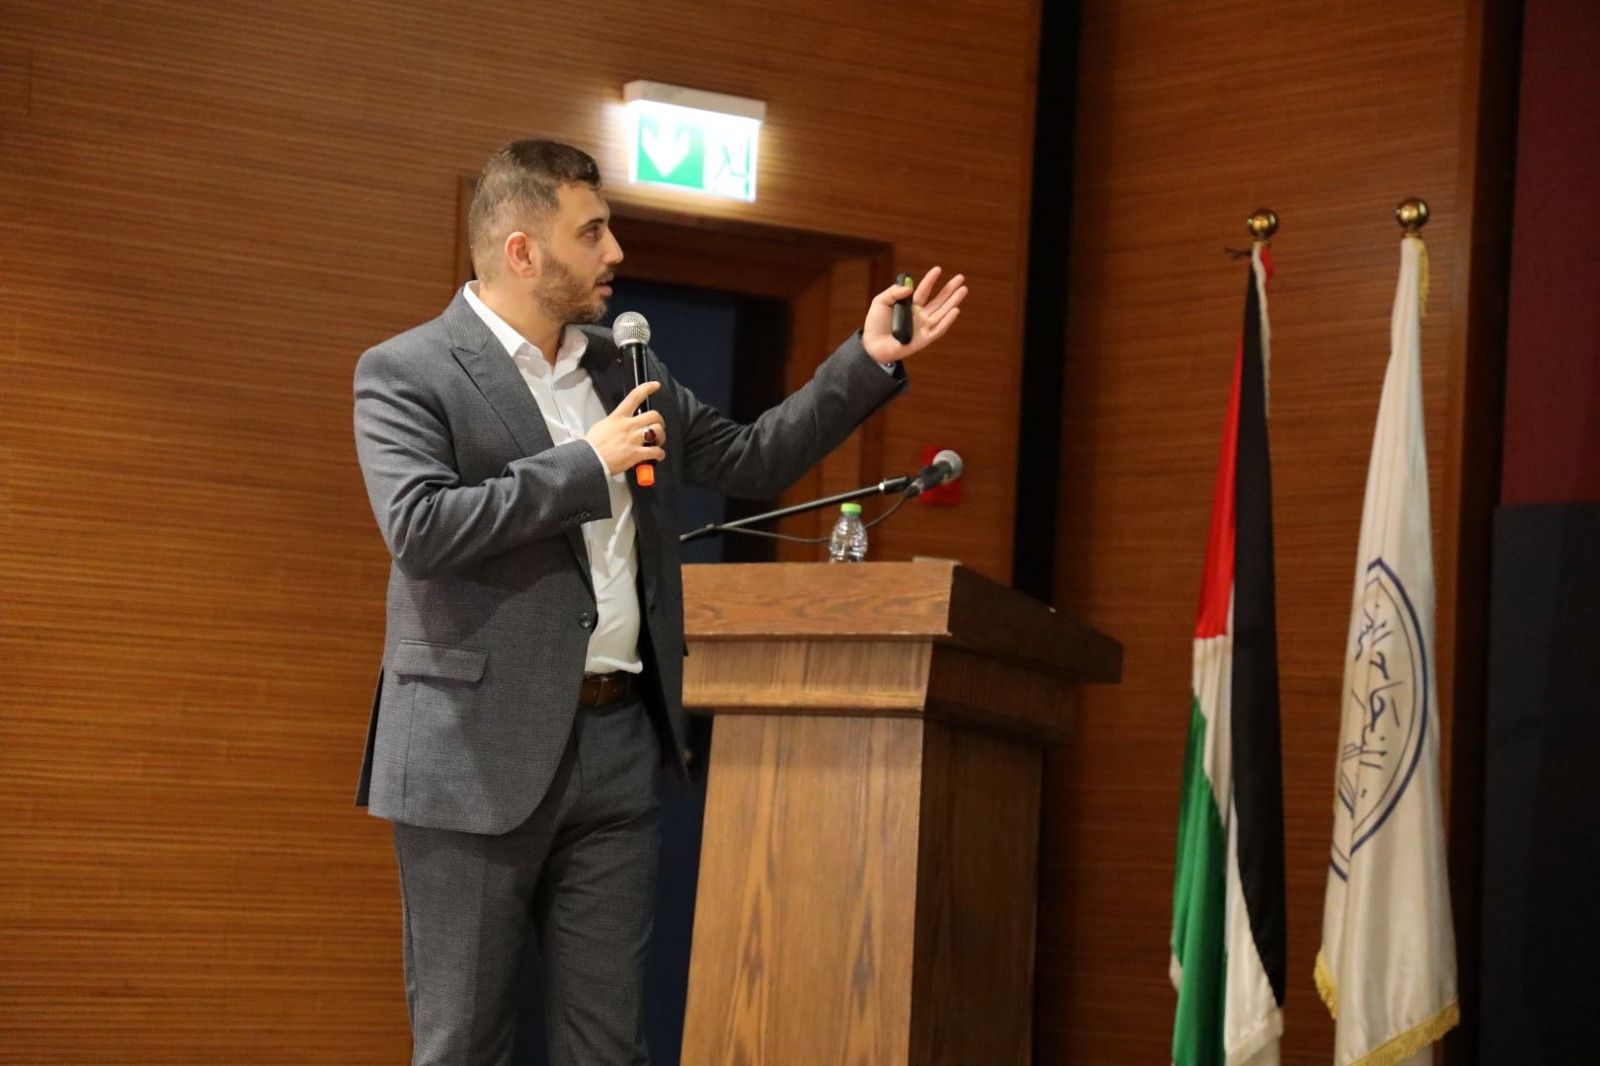 المرصد الفلسطيني "تحقق" وبالتعاون مع الاتحاد الأوروبي ينظمان ورشة حول الحق في الوصول إلى المعلومة